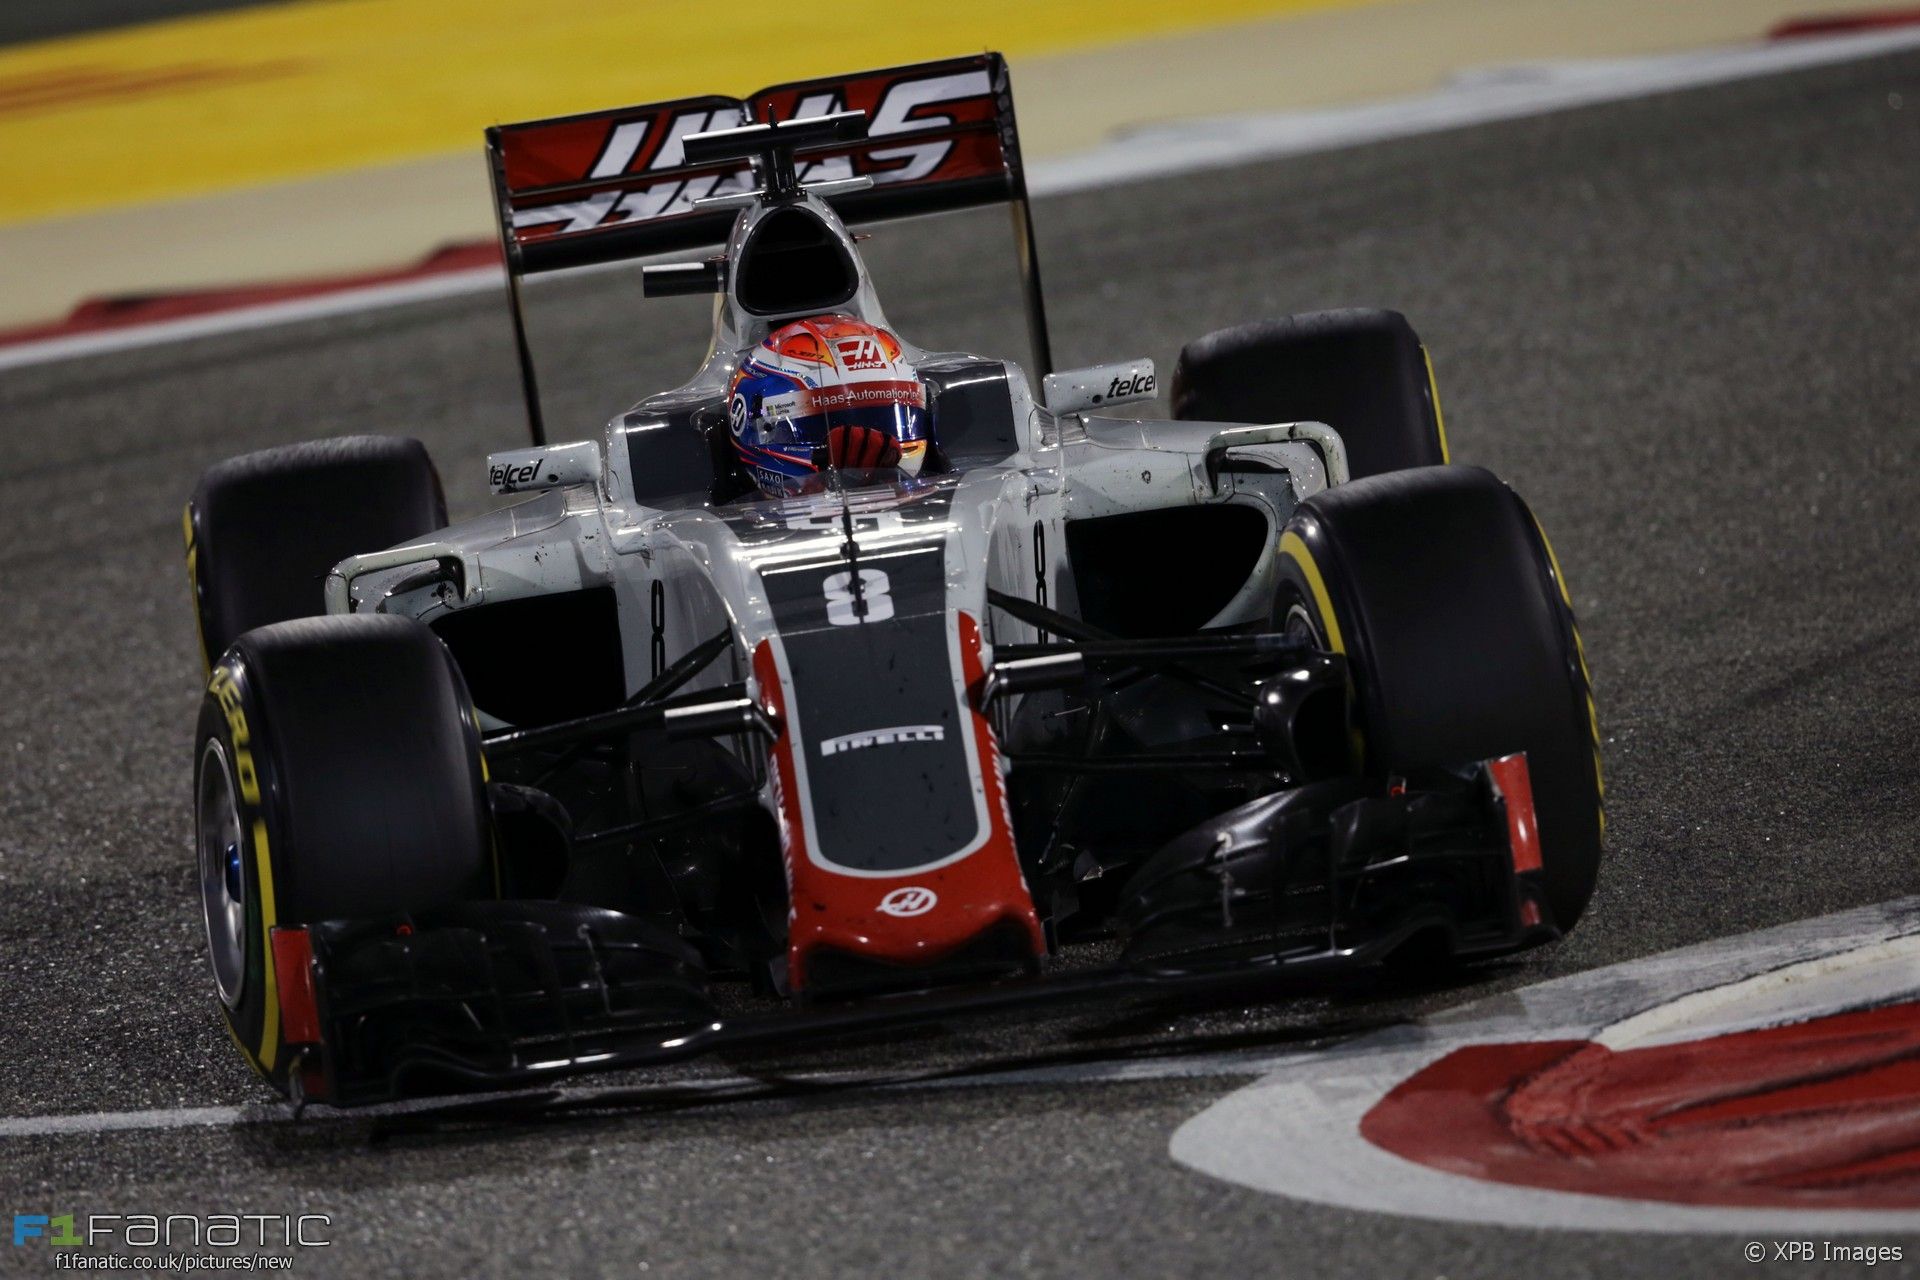 Buona la prima. Pur andando a punti con il solo Grosjean (in foto, durante il GP del Bahrain, chiuso al 5° posto), la Haas ha ottenuto un rimarchevole 8° posto Costruttori (foto da: f1fanatics.co.uk / XPB Images)